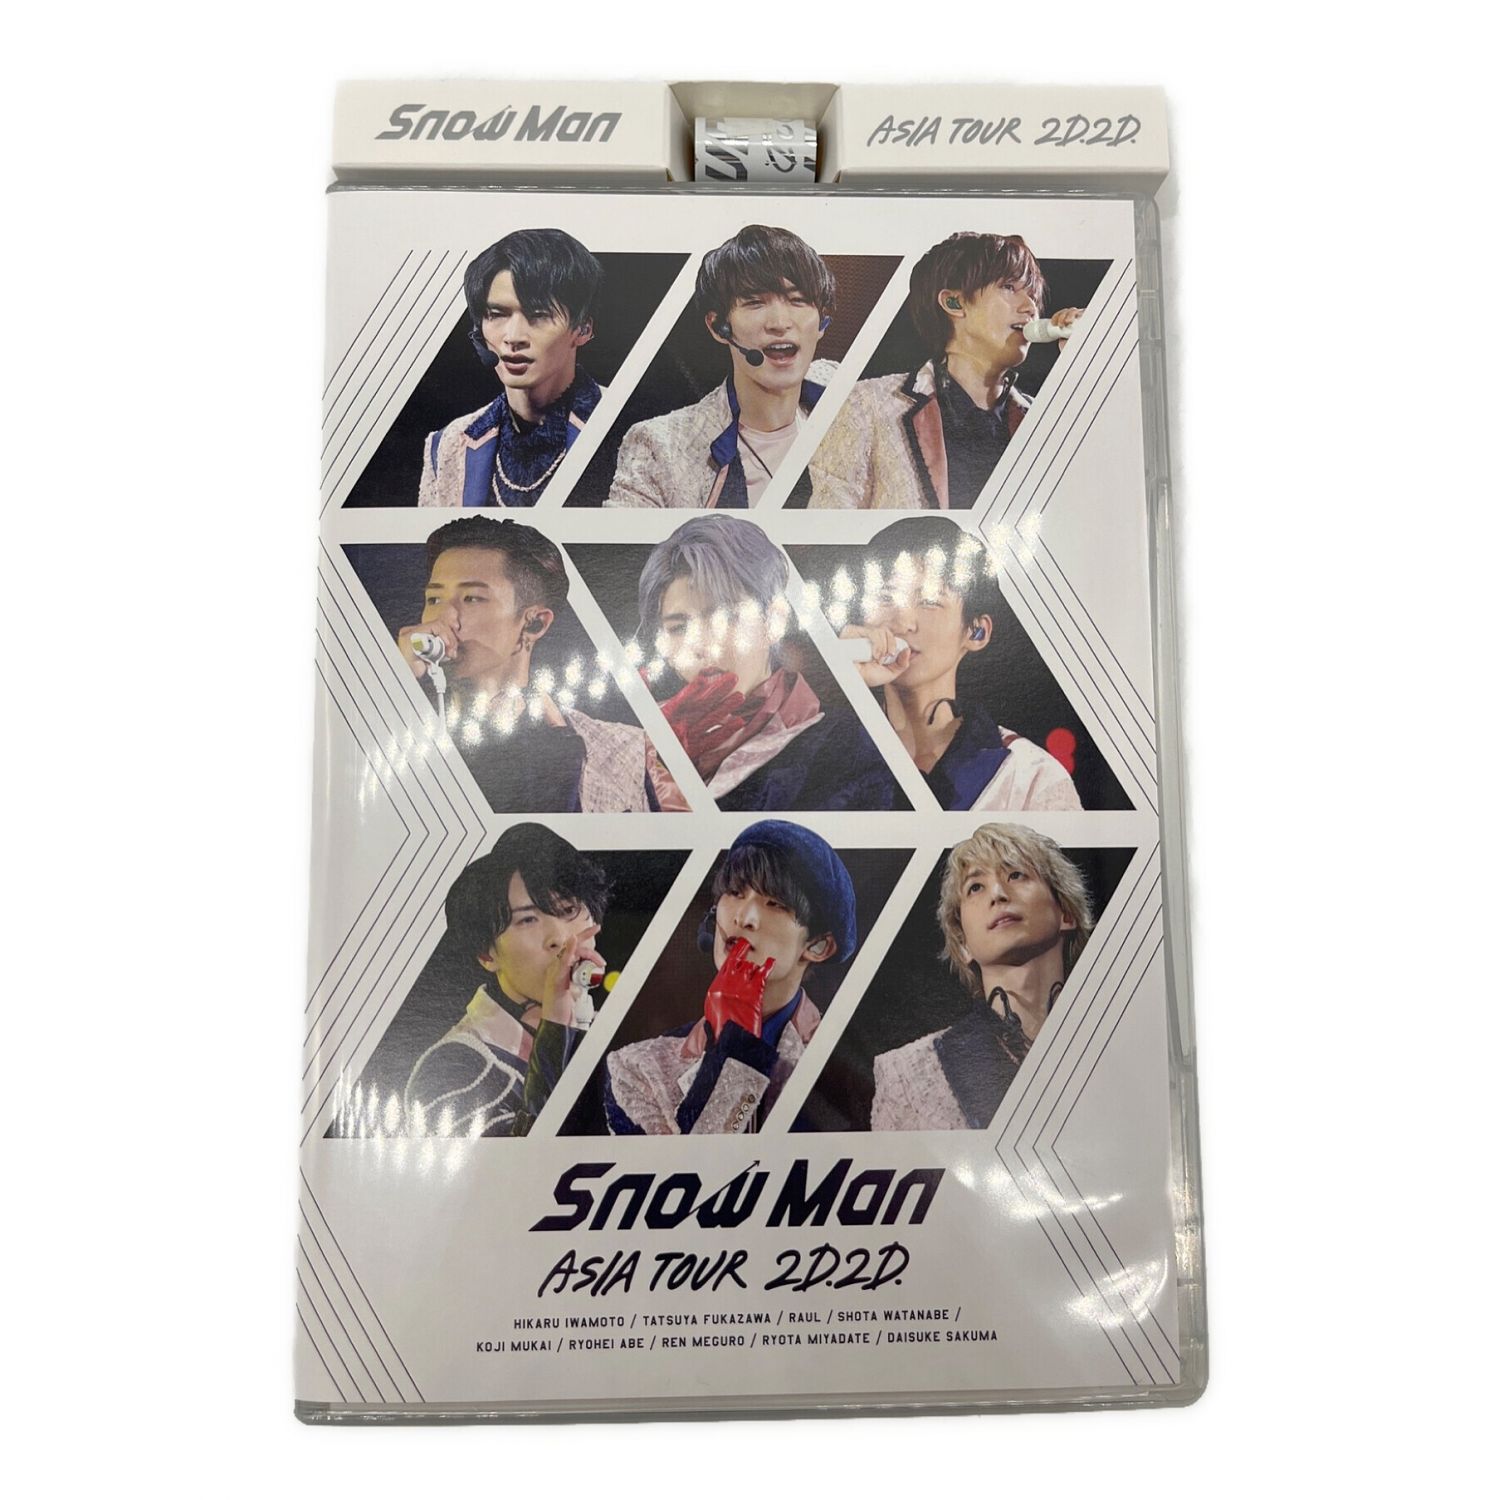 snowman Asiatour 2D.2D. DVD 初回盤 銀テープ付